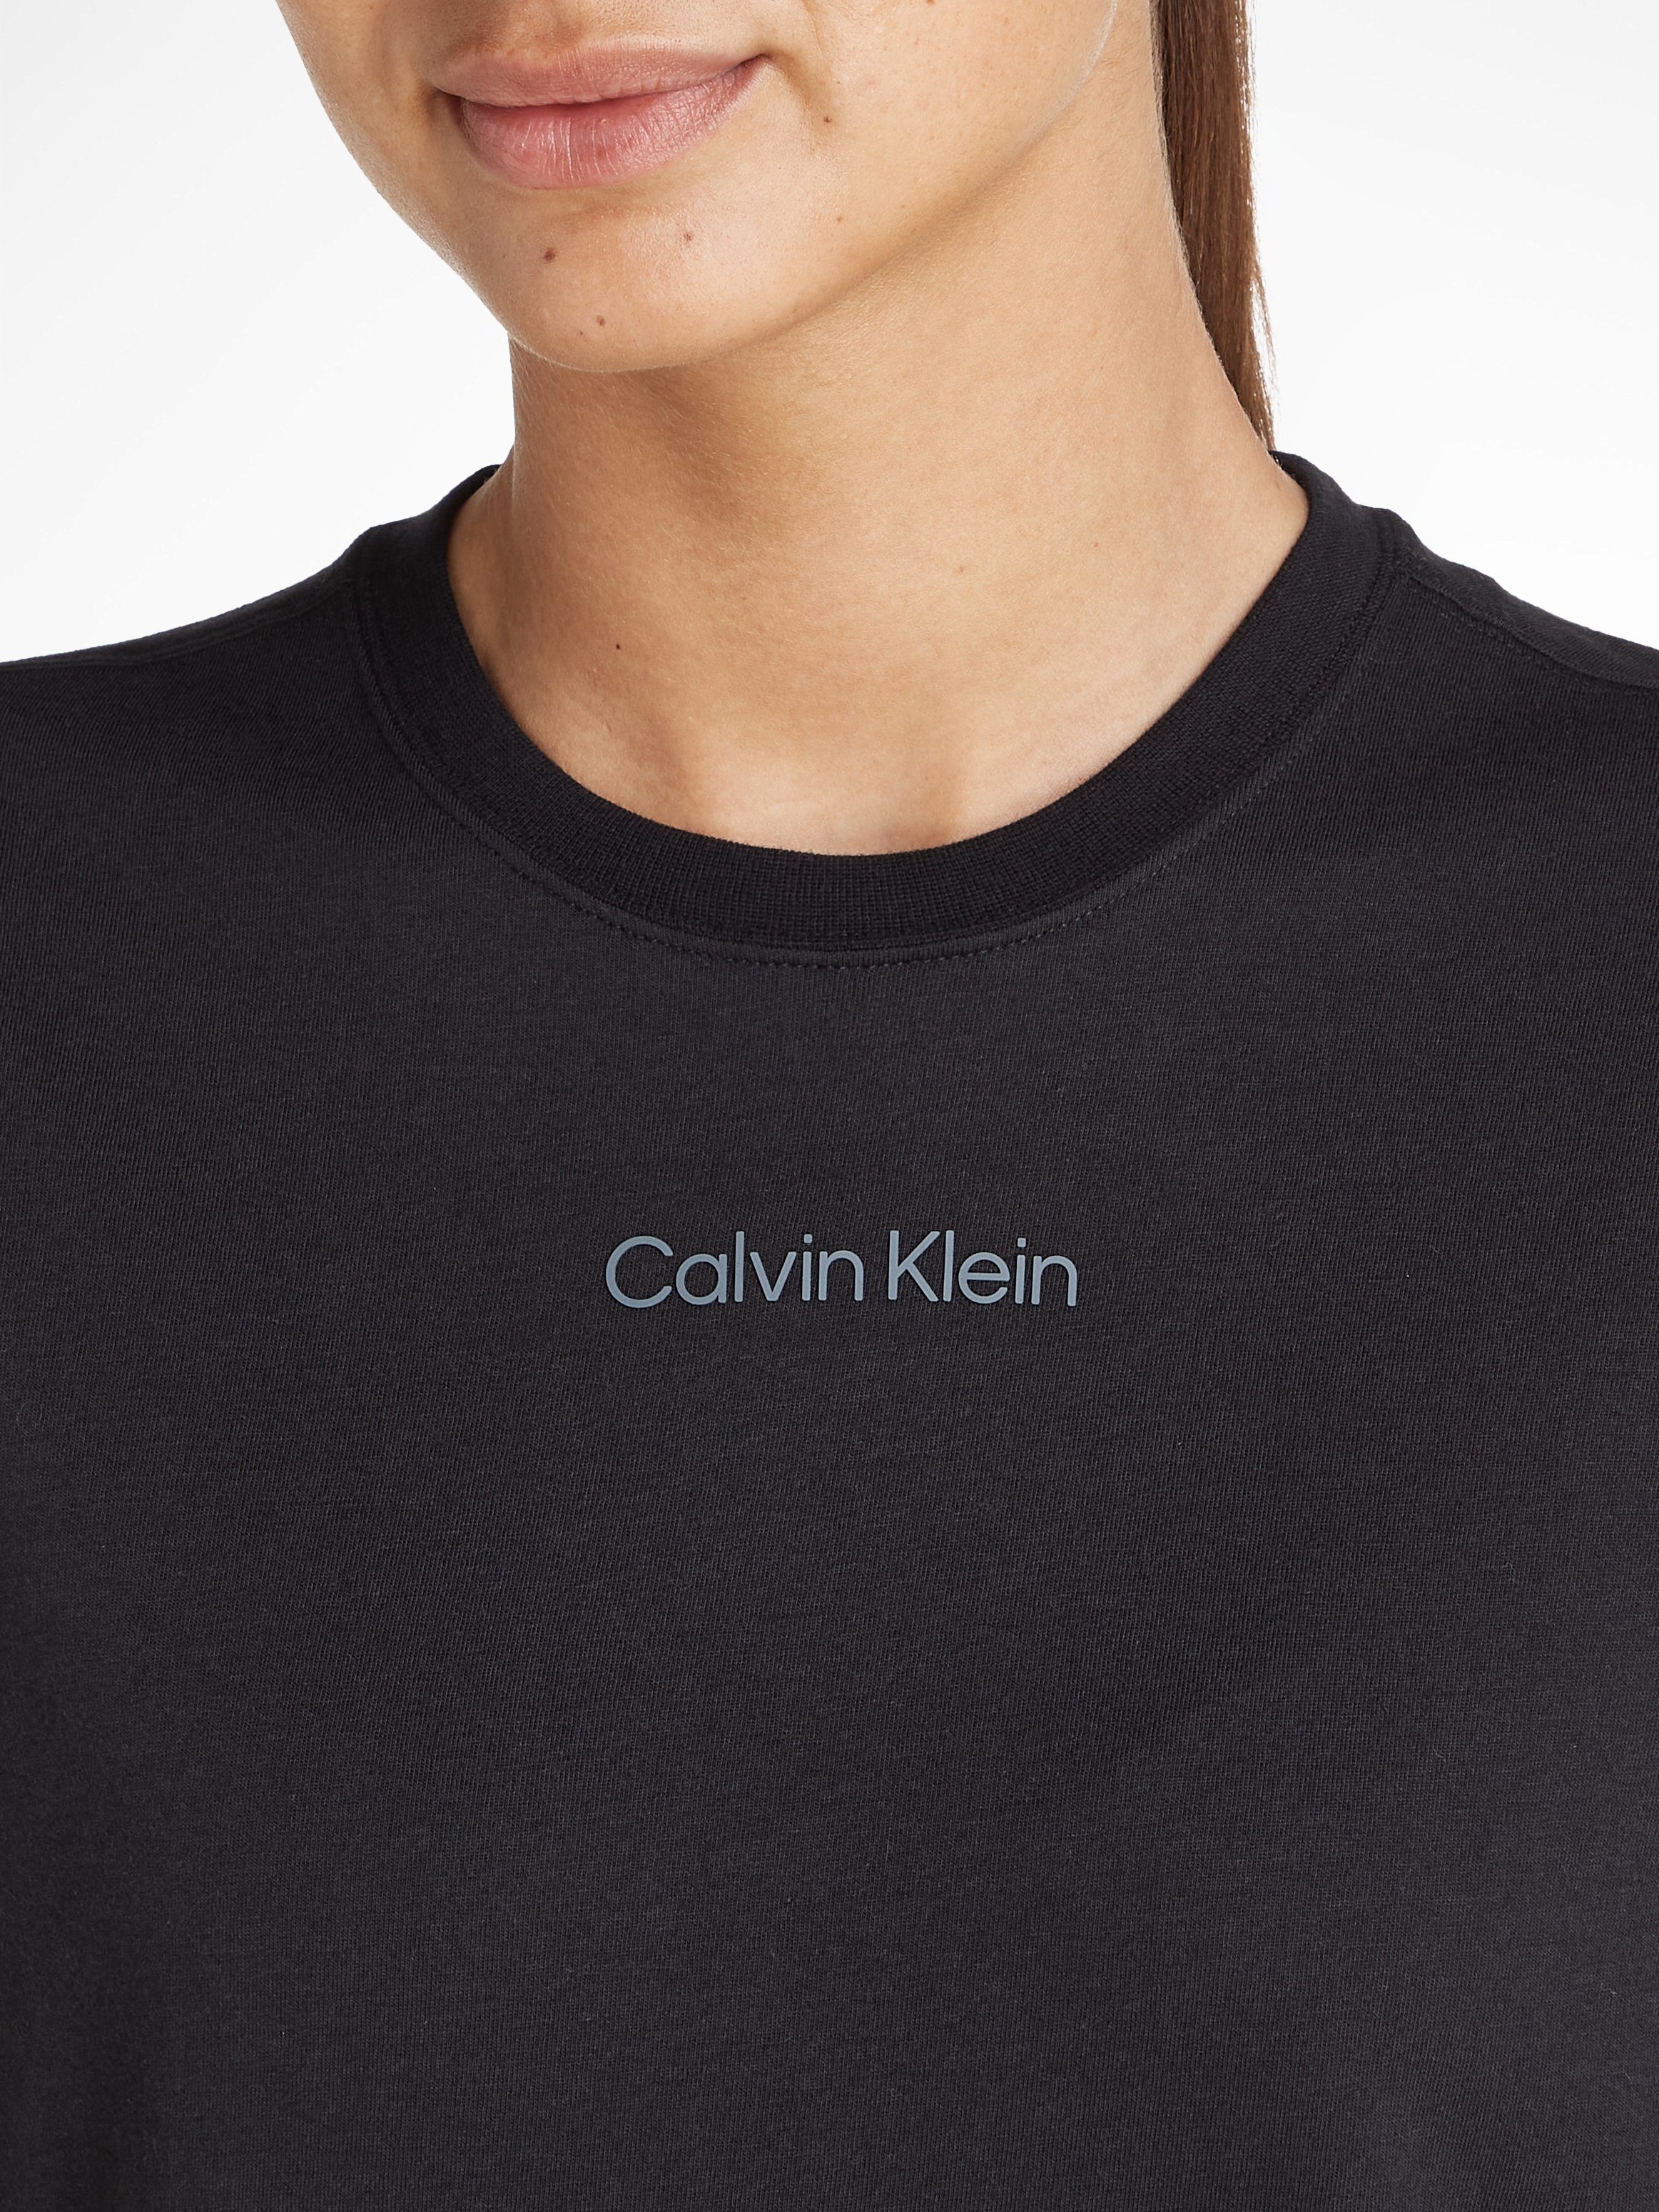 schwarz Sport Klein T-Shirt Calvin